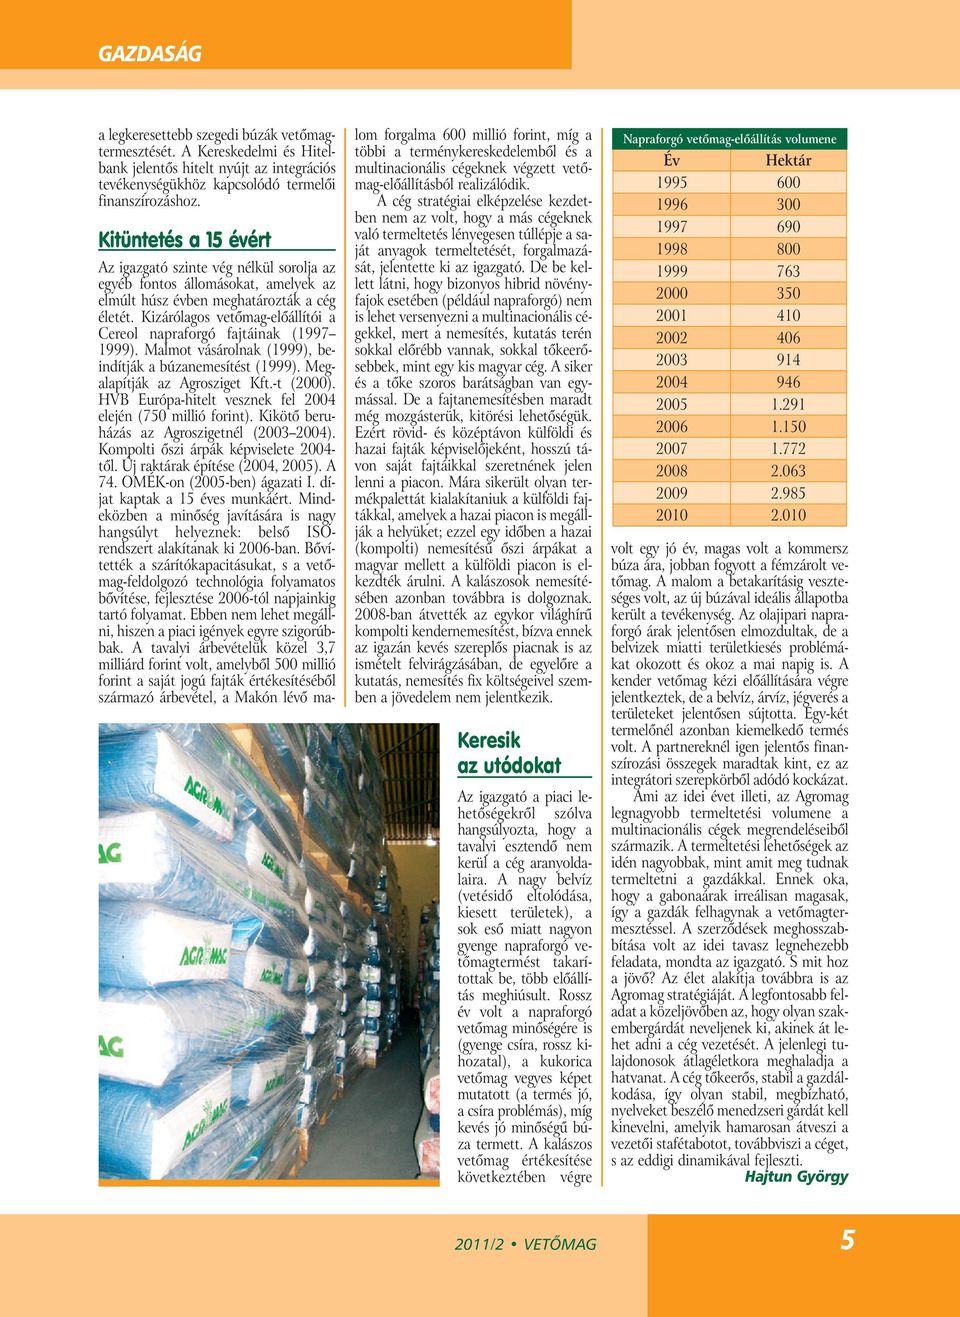 Kizárólagos vetőmag-előállítói a Cereol napraforgó fajtáinak (1997 1999). Malmot vásárolnak (1999), beindítják a búzanemesítést (1999). Megalapítják az Agrosziget Kft.-t (2000).